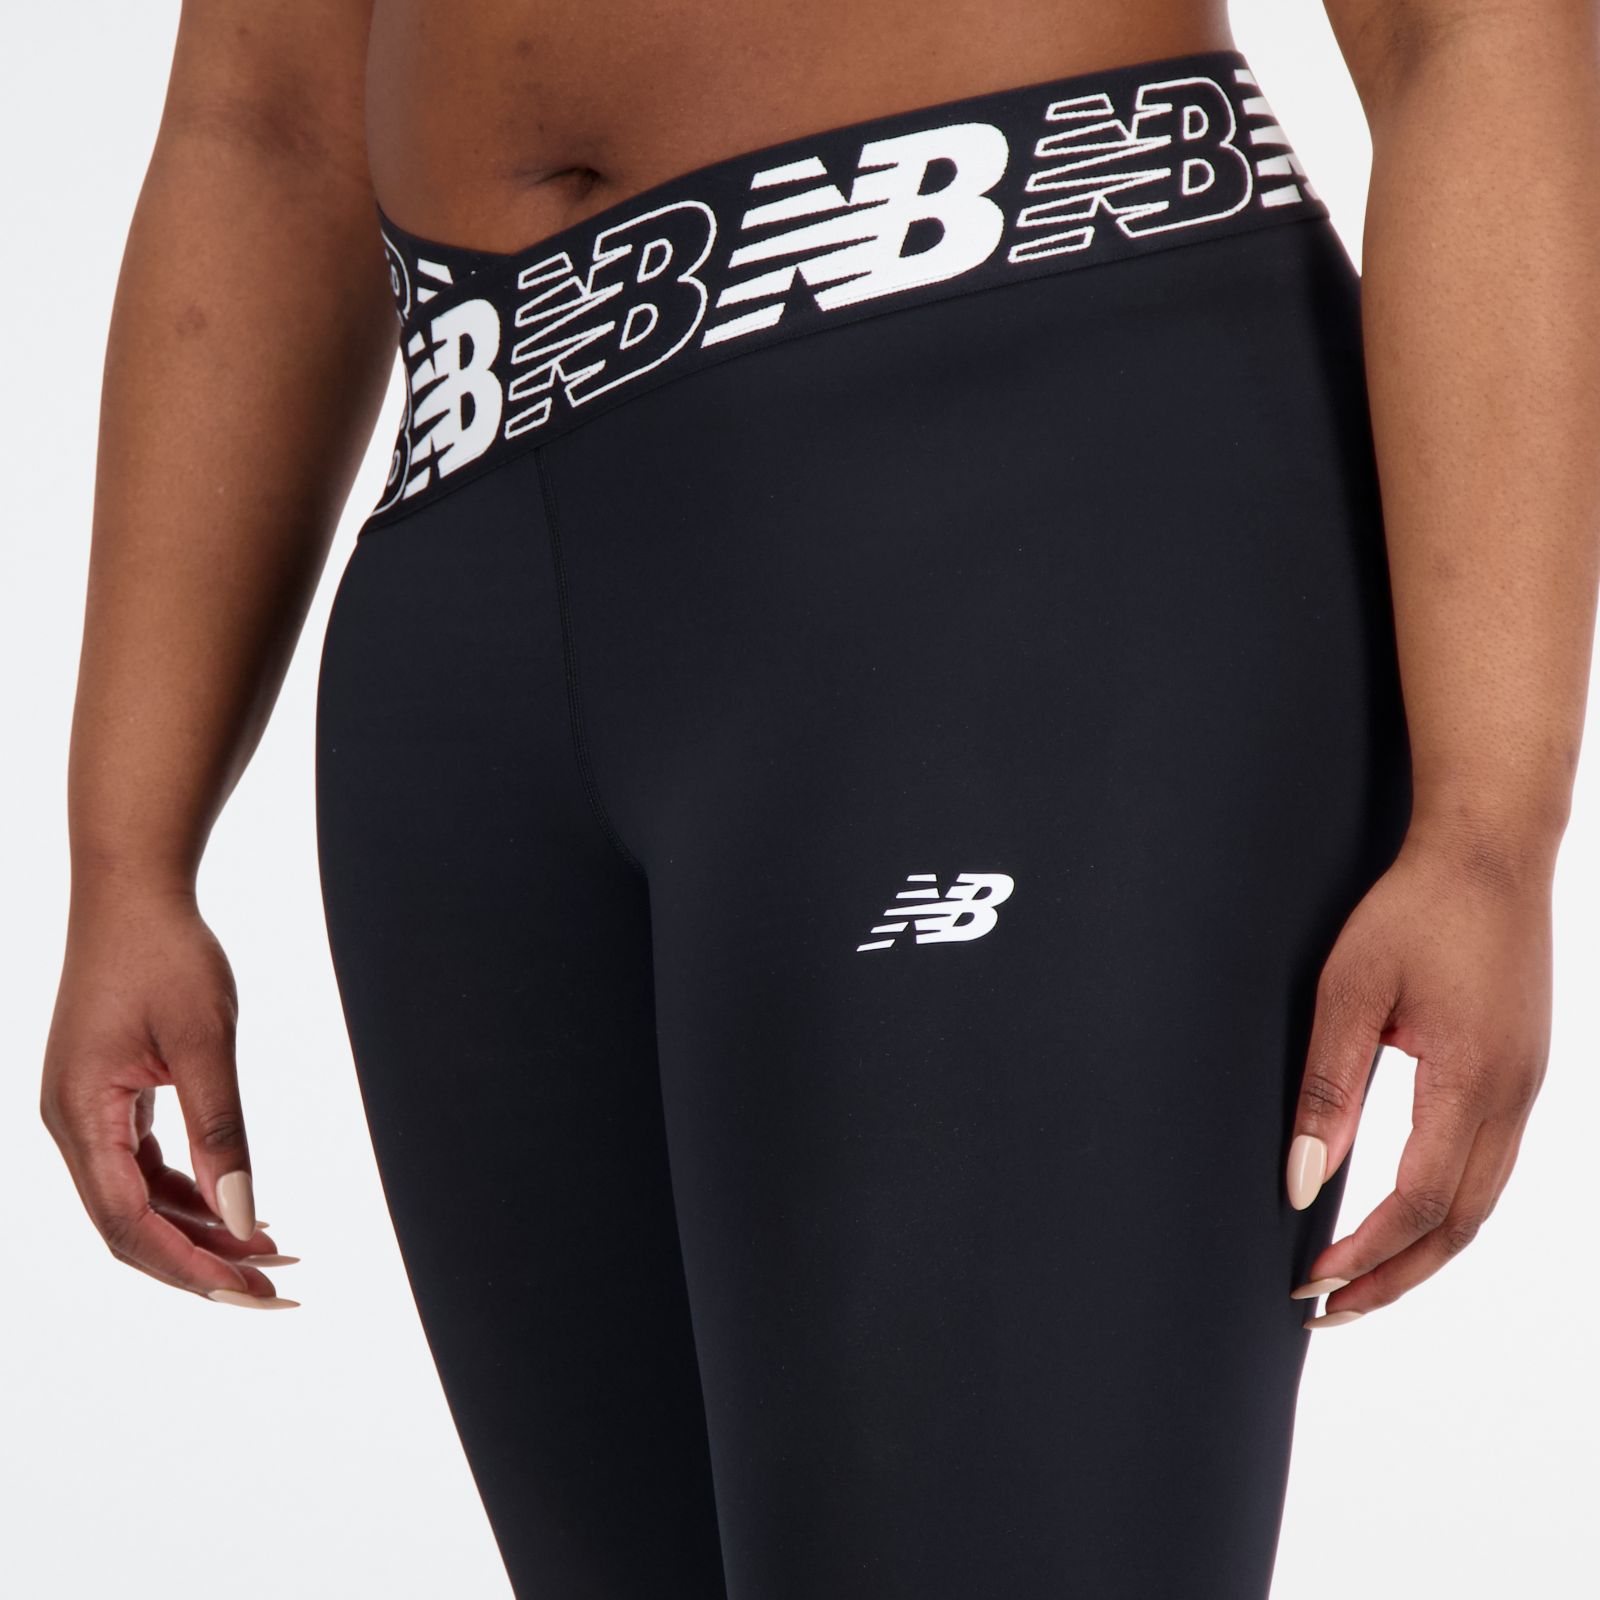 Buy New Balance women high rise brand logo leggings black Online